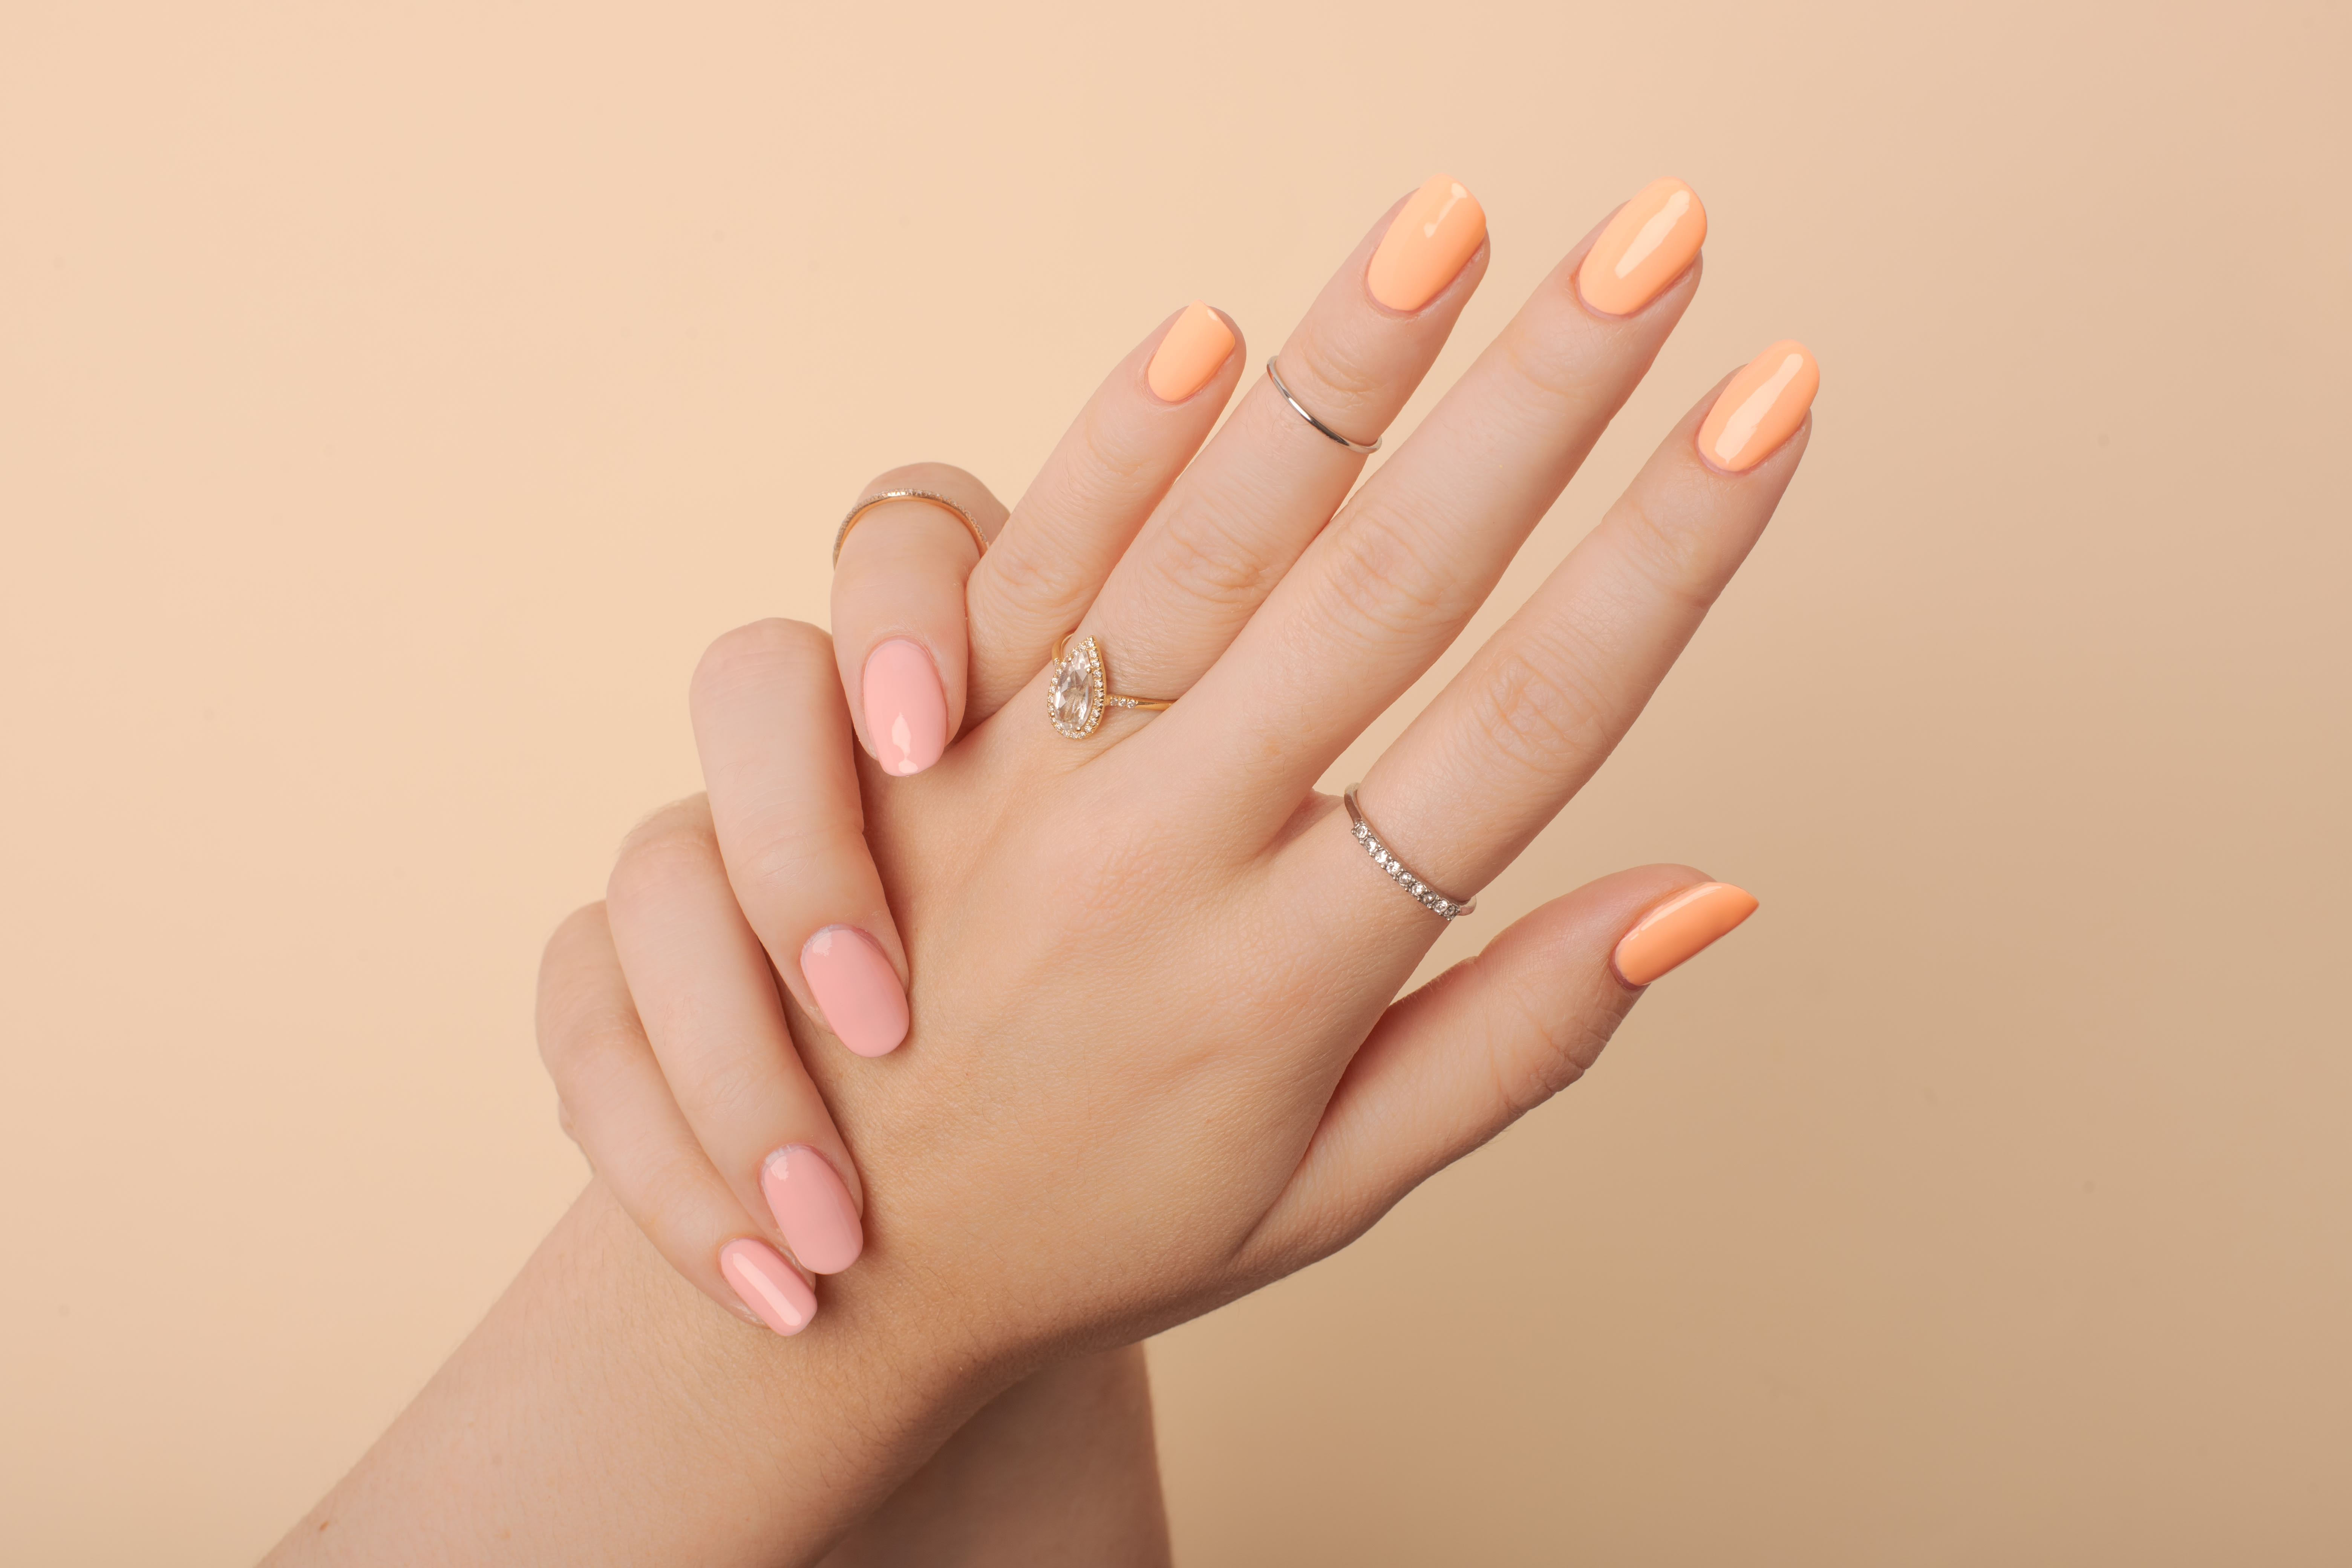 2. Dual-color manicure - wide 5